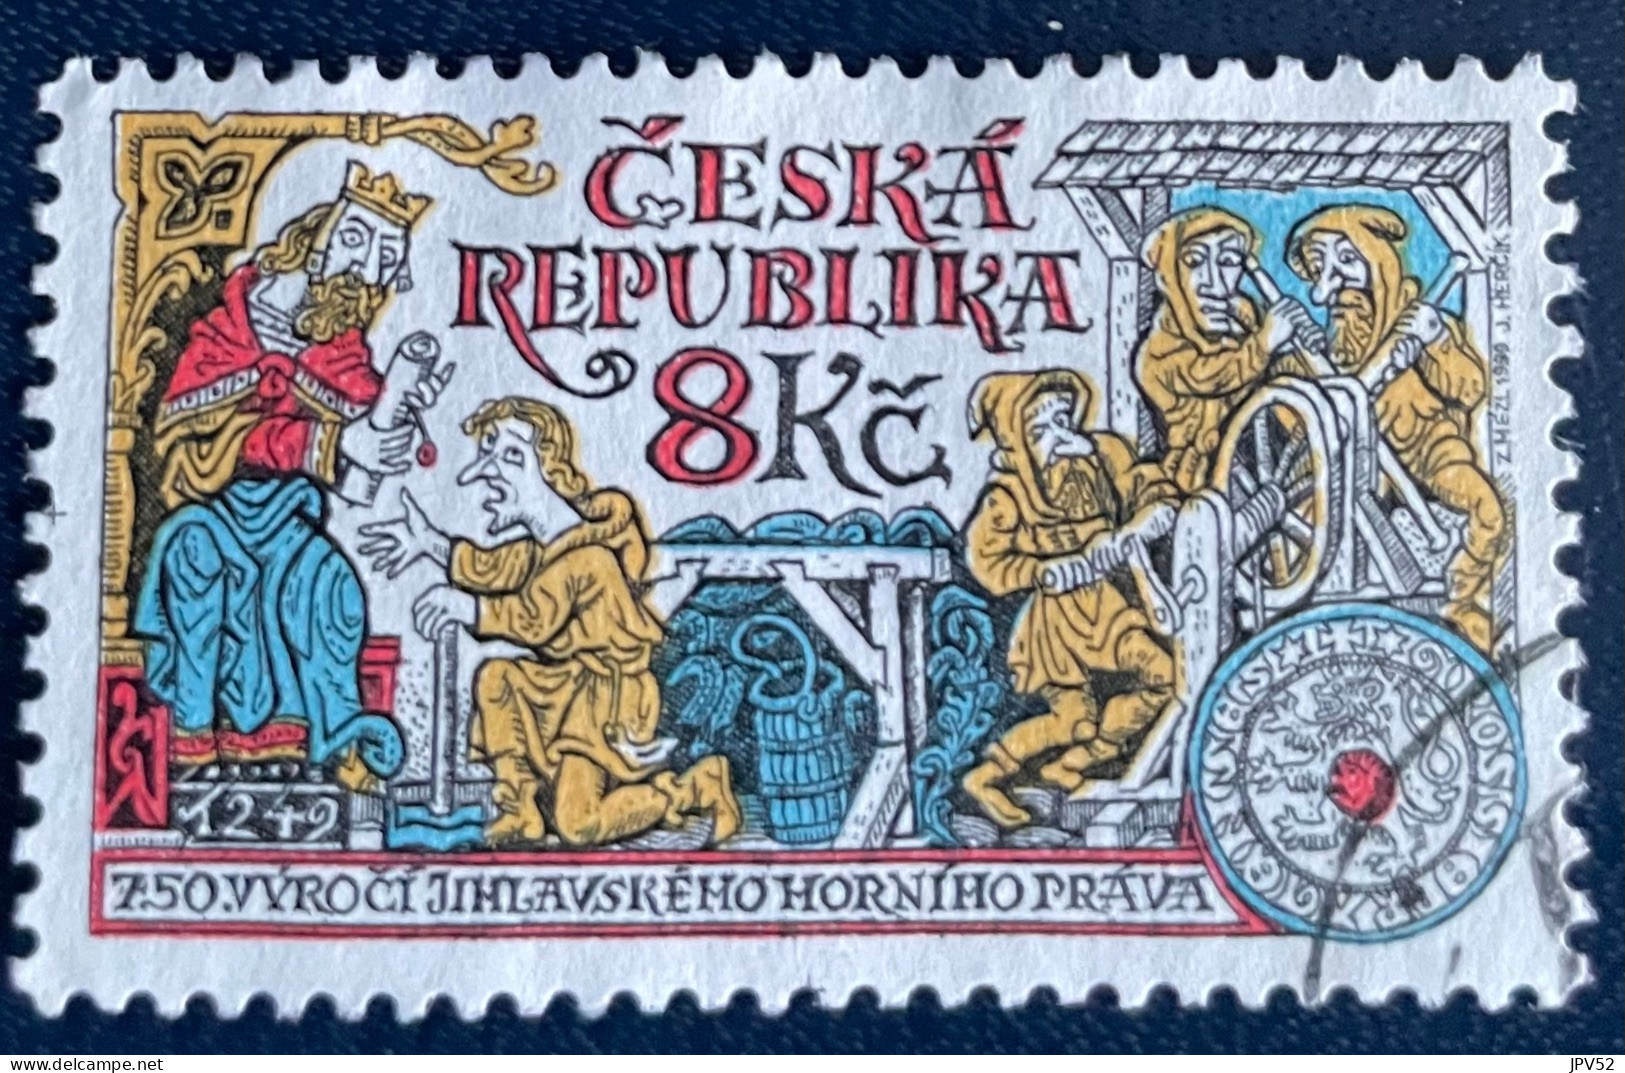 Ceska Republika - Tsjechië - C4/5 - 1999 - (°)used - Michel 223 - 750j Mijnbouwconcessie - Gebraucht